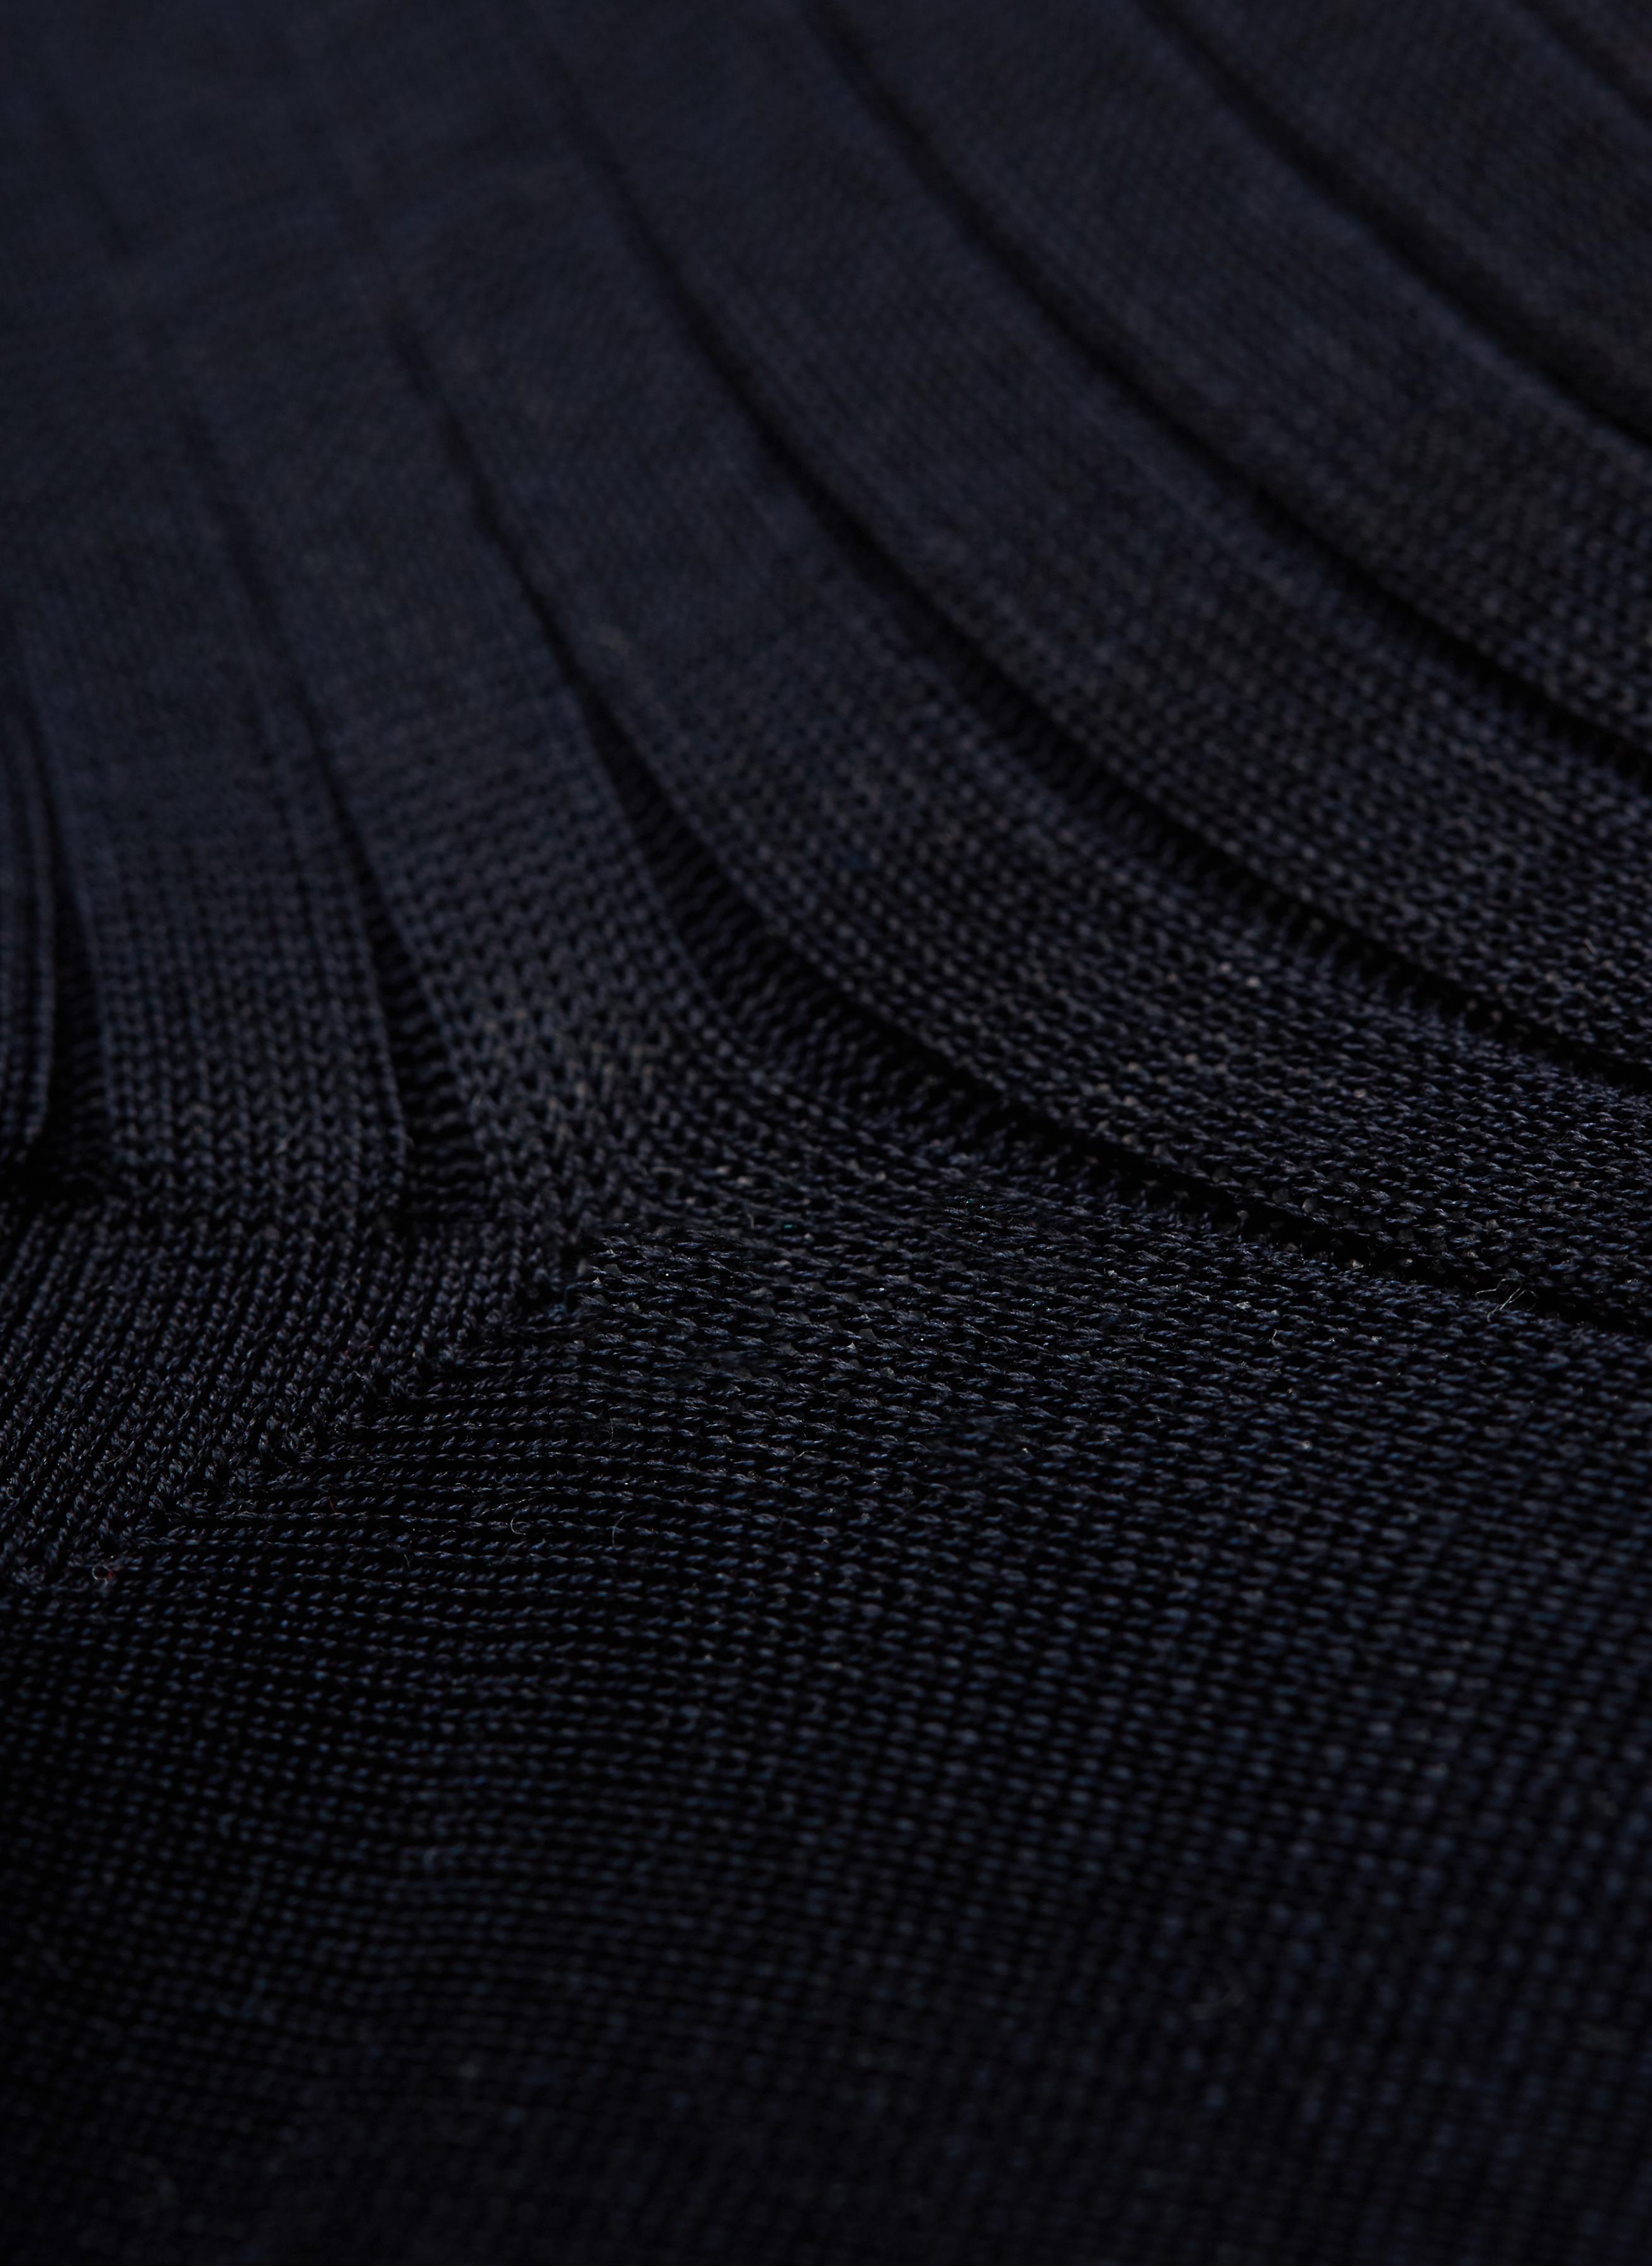 Bresciani cotton socks in black colour large view